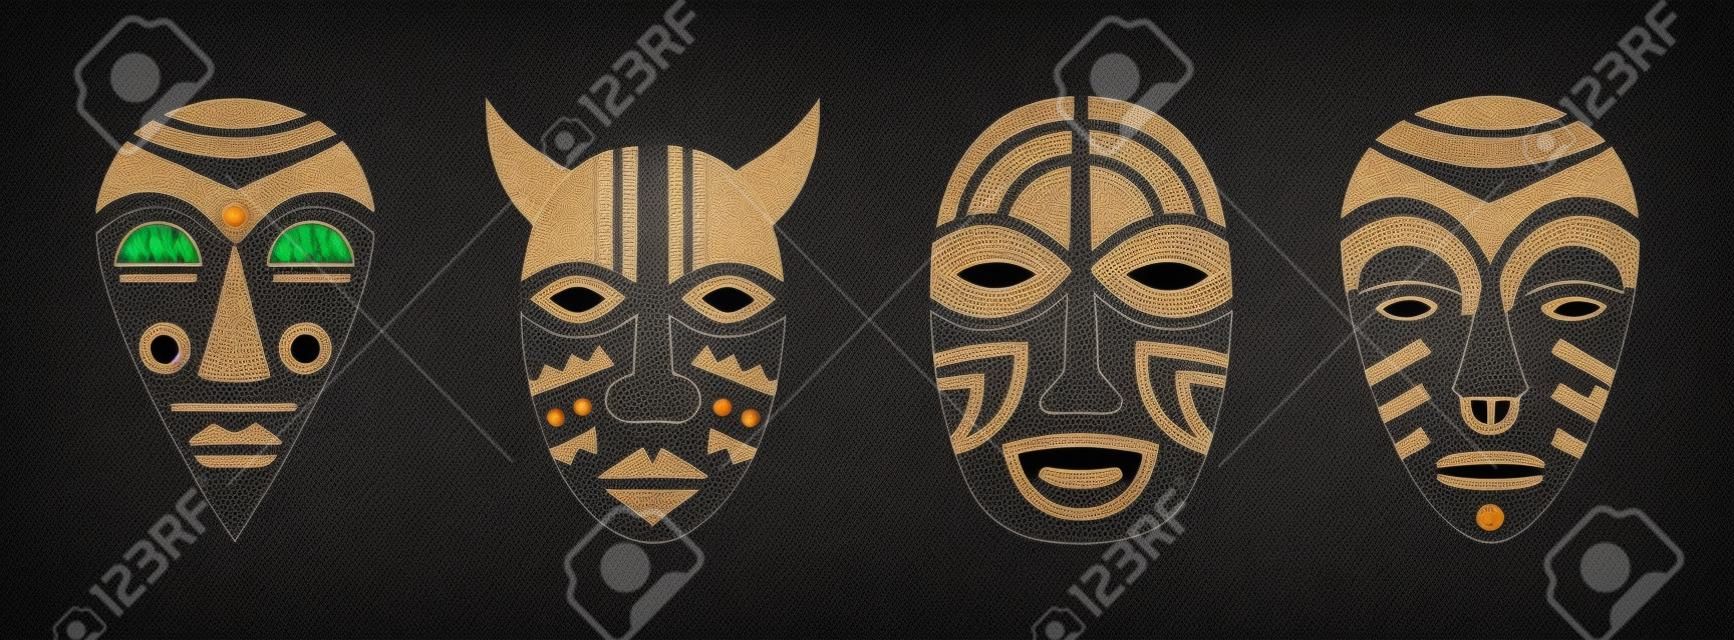 Les masques rituels des chamans et des aborigènes définissent le totem vaudou du dieu démon africain pour les rituels vectoriels cérémoniaux religieux et traditionnels